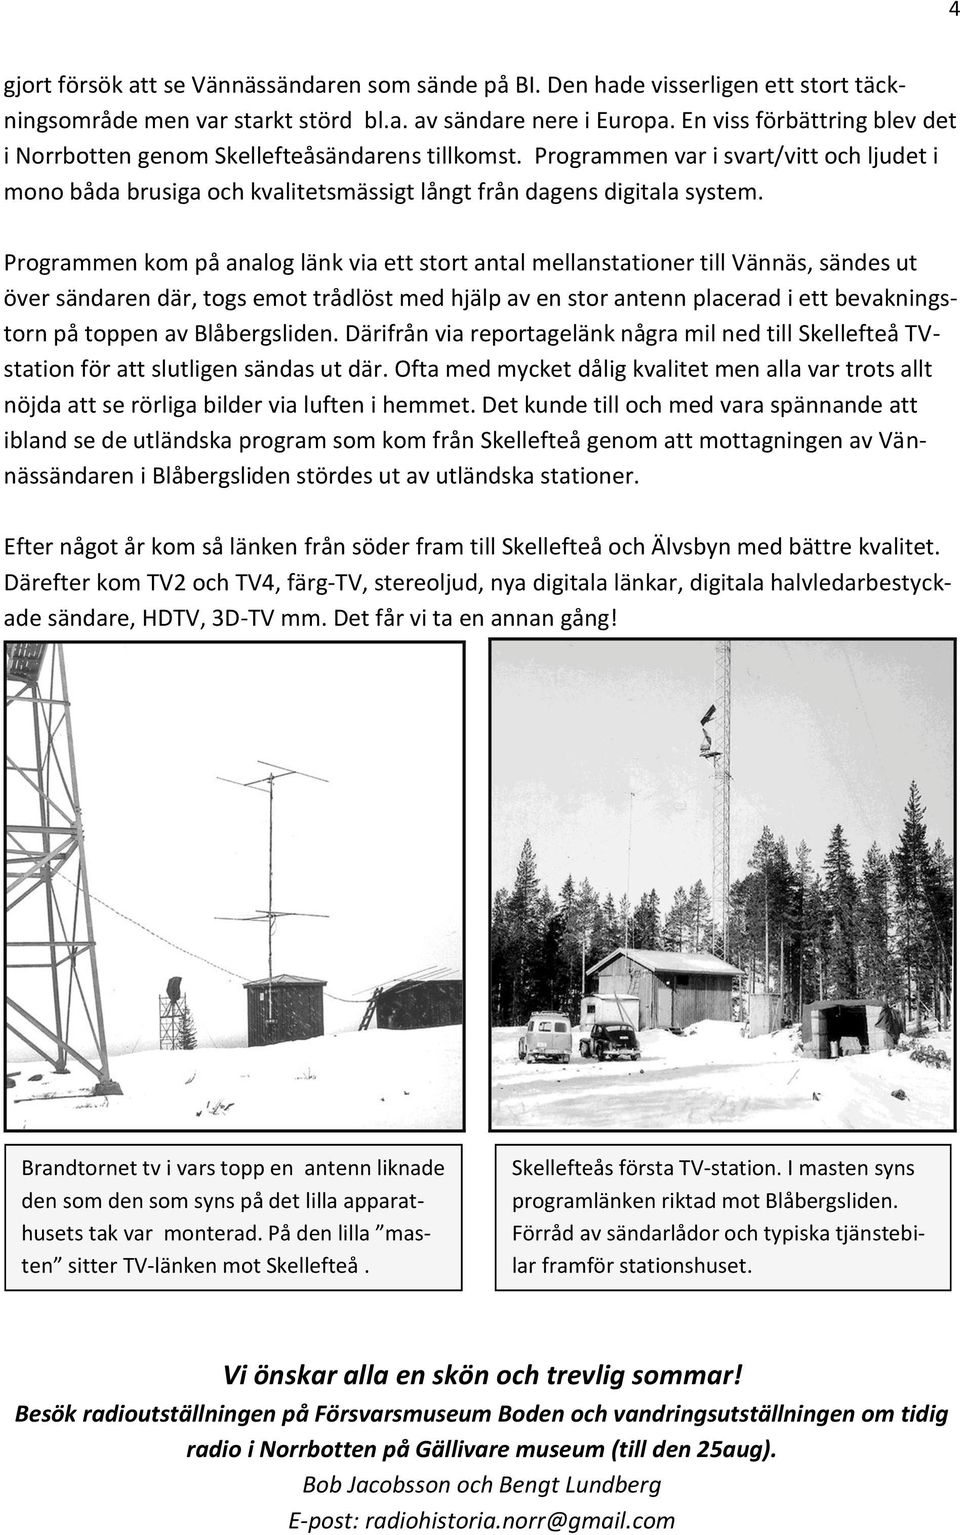 Programmen kom på analog länk via ett stort antal mellanstationer till Vännäs, sändes ut över sändaren där, togs emot trådlöst med hjälp av en stor antenn placerad i ett bevakningstorn på toppen av